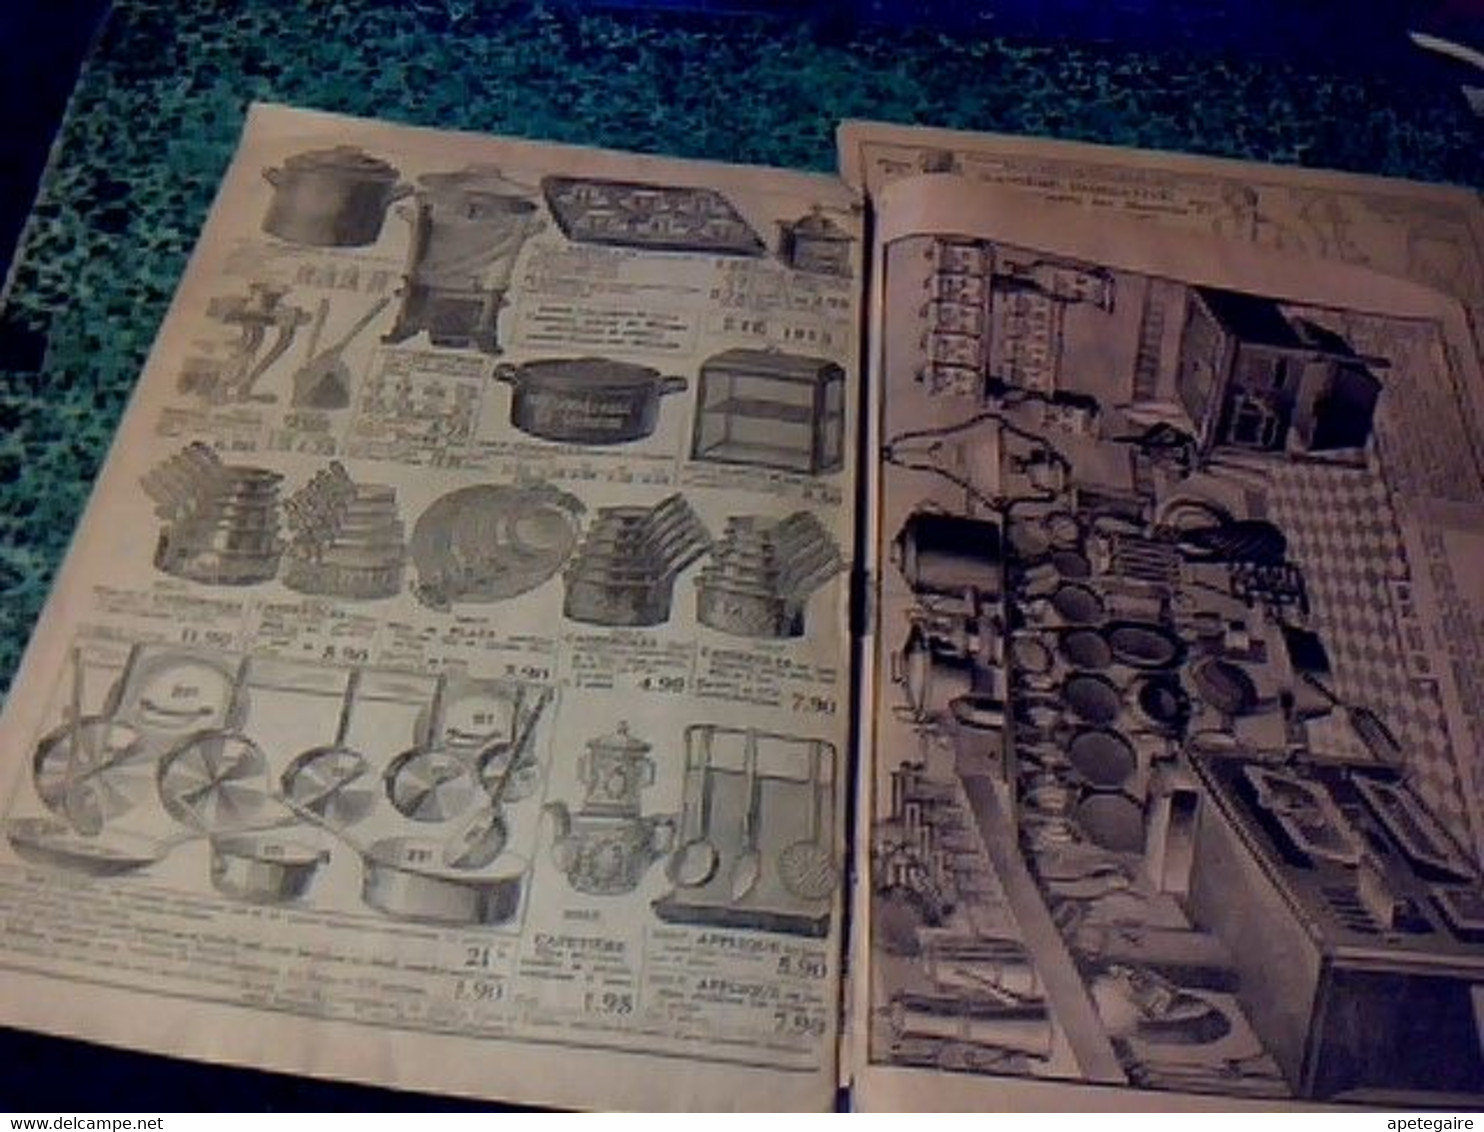 Vieux papiers Publicités  & catalogue  magasin  " aux classes laborieuses "  Paris bd de Strasbourg été 1913